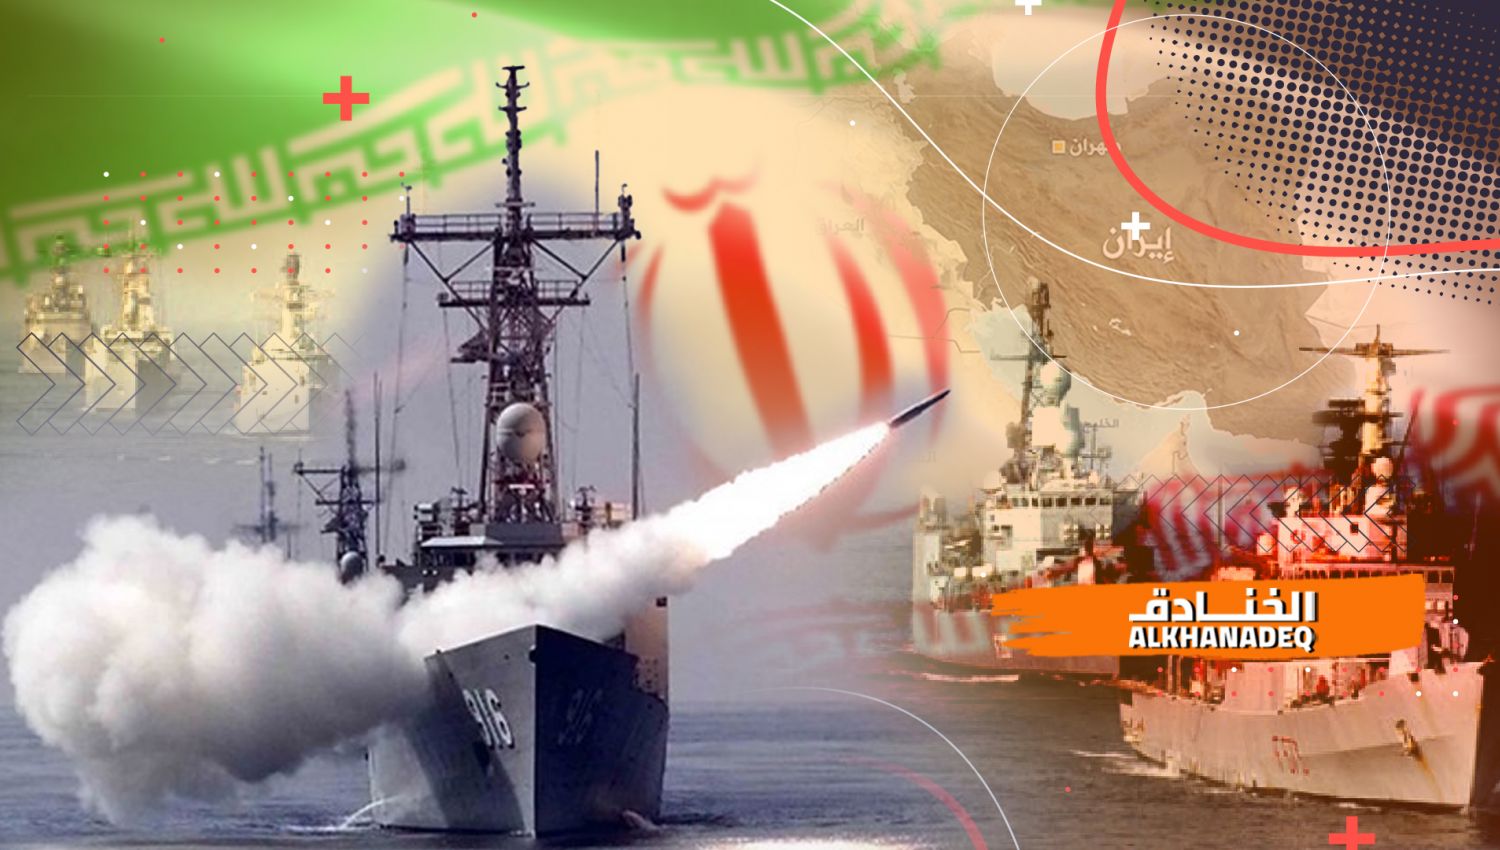 السفن الحربية الإيرانية: الذراع البحري الأقوى في المنطقة